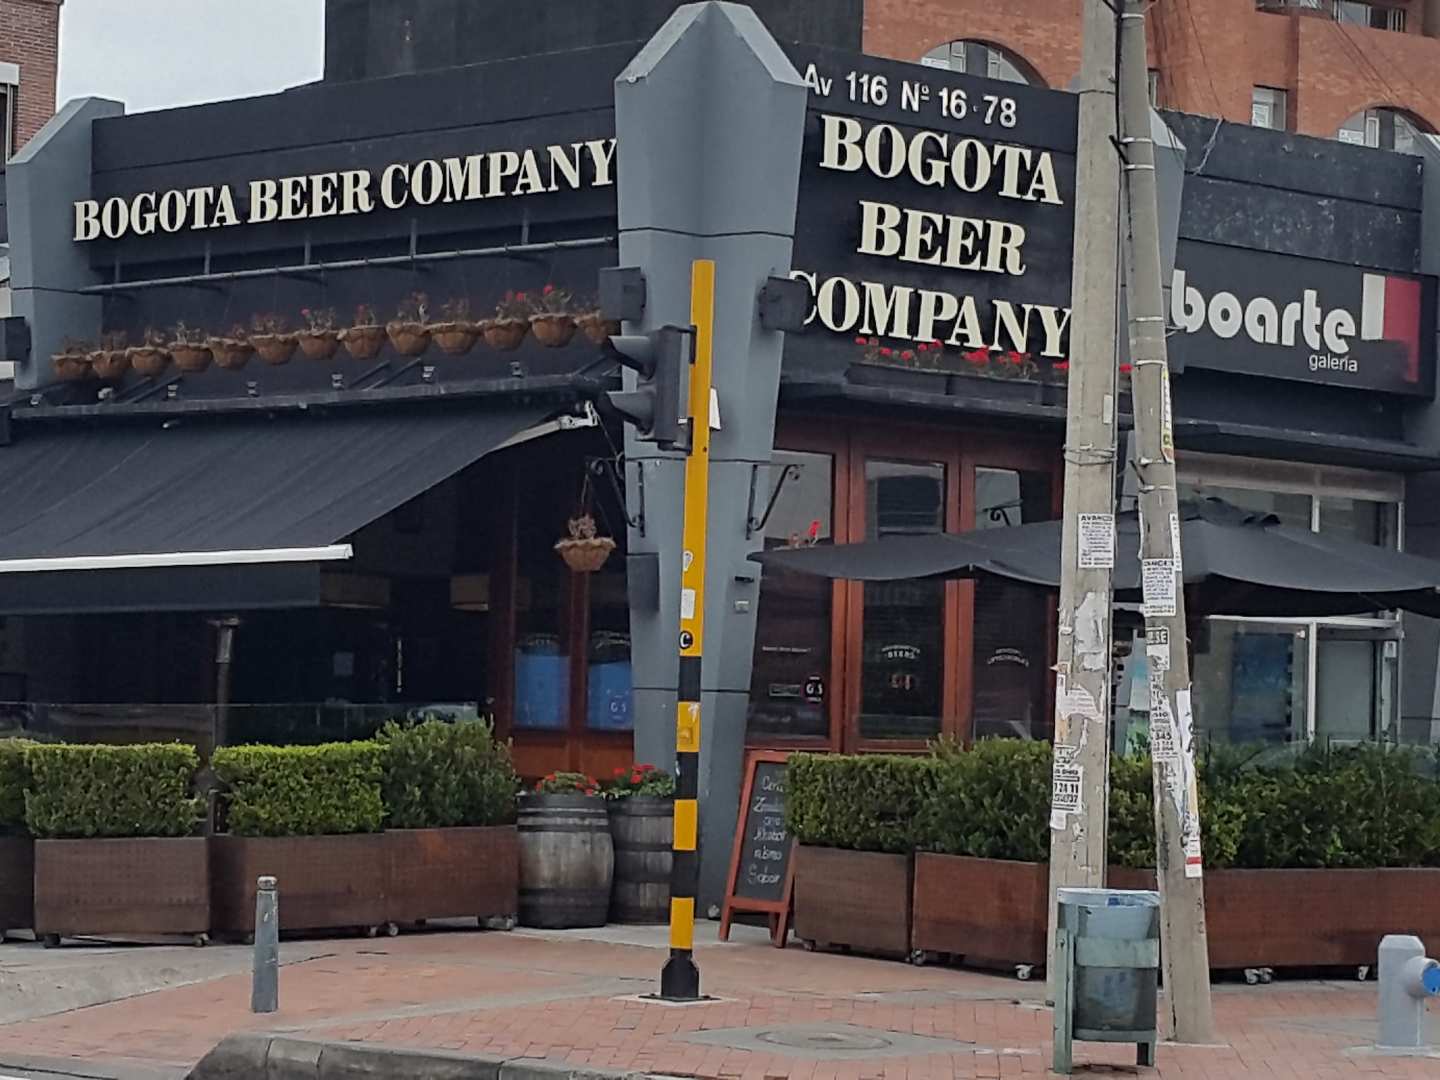 Bogotá Beer Company (Pepe Sierra)